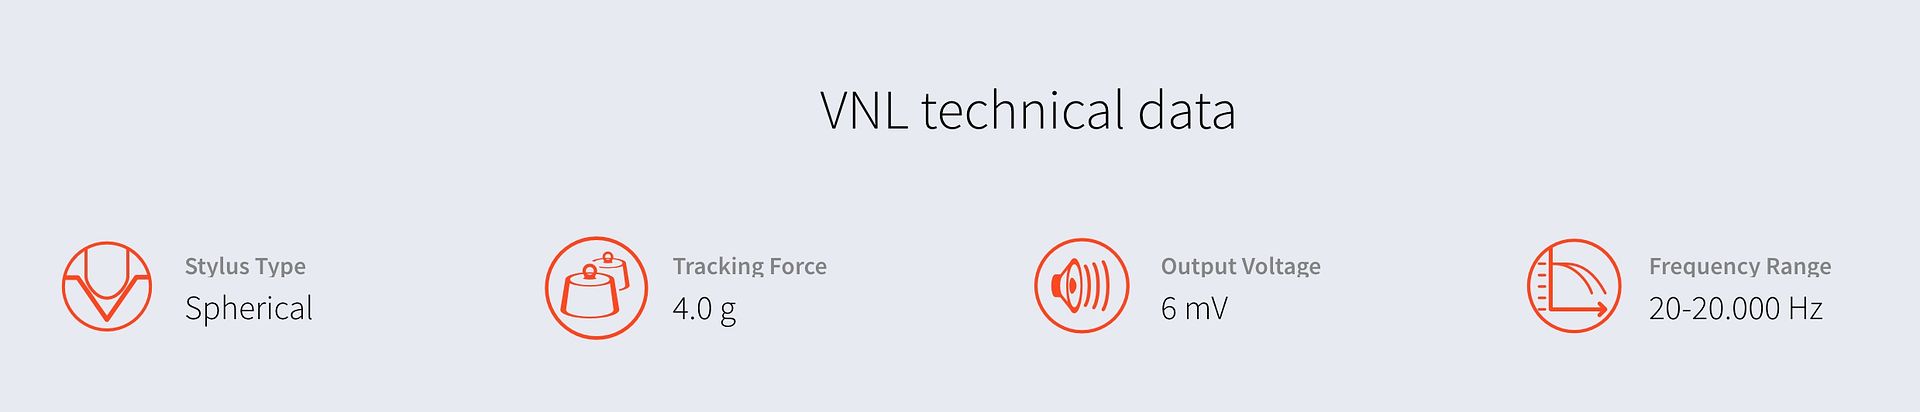 VNL Technical Data